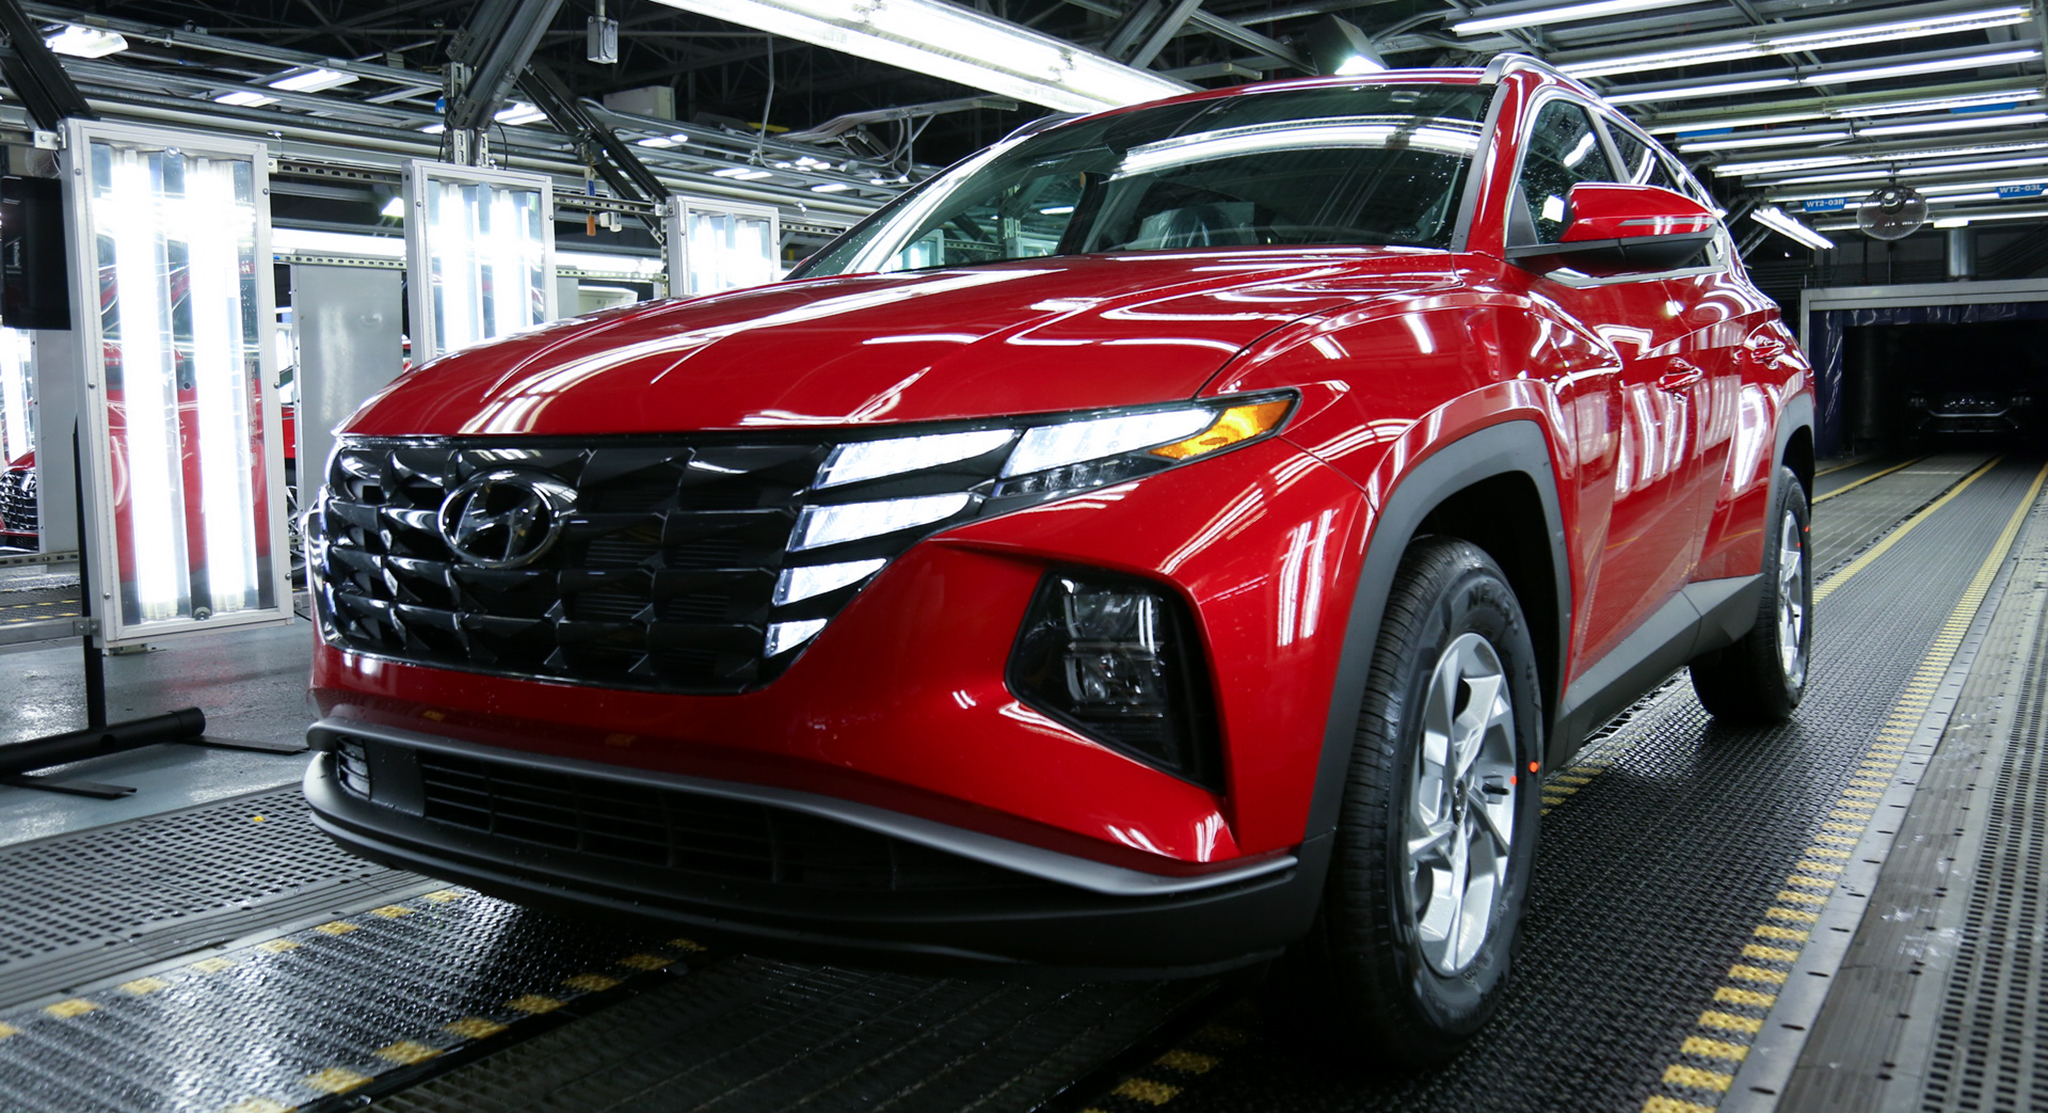 Hyundai Tucson 2022 bắt đầu được sản xuất tại Mỹ